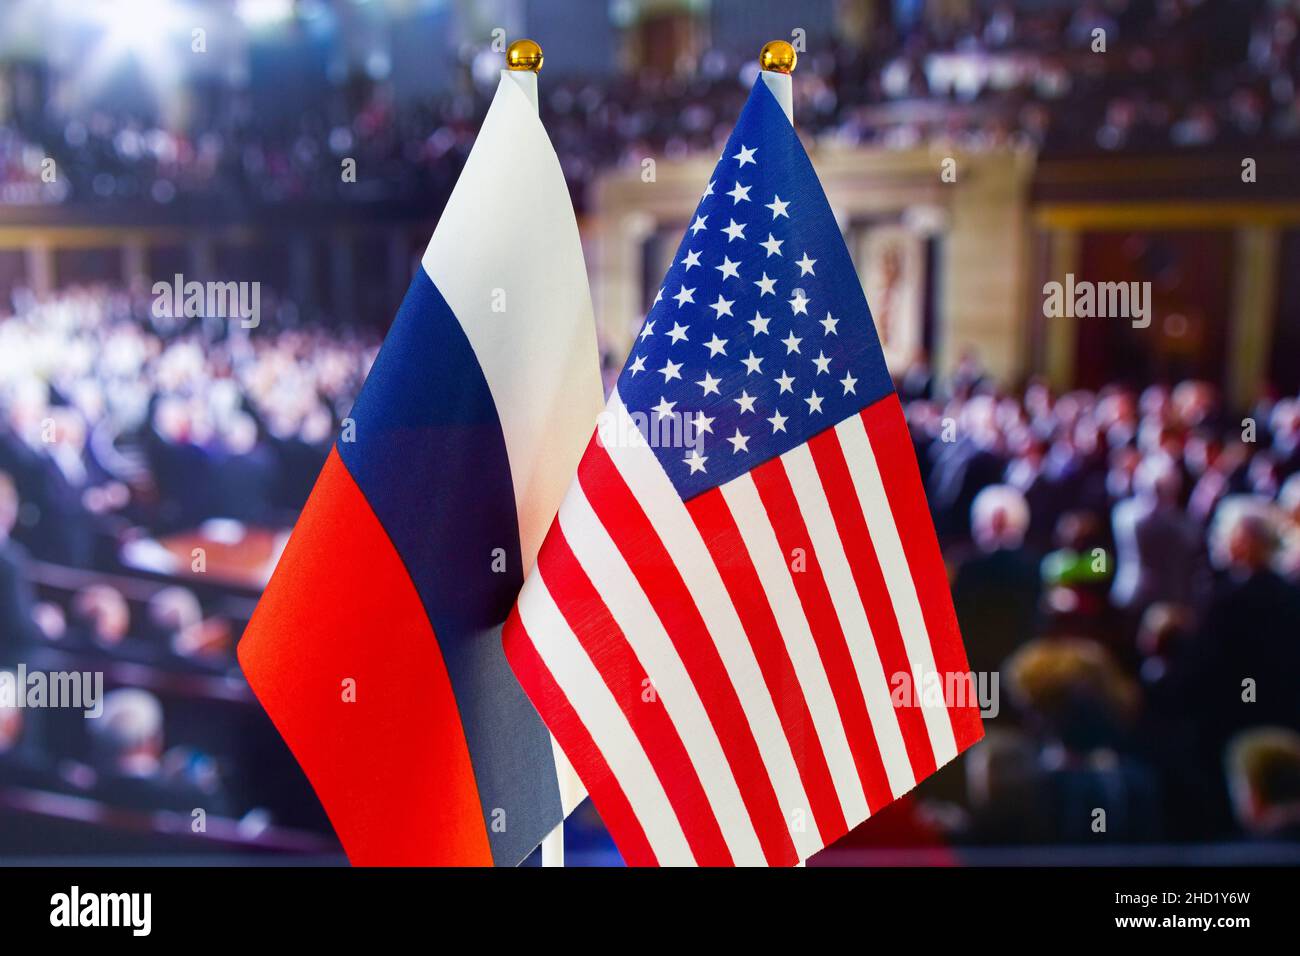 Die US-Flagge, die russische Flagge. Flagge der USA, Flagge Russlands. Die Konfrontation zwischen den Vereinigten Staaten von Amerika und der Russischen Föderation. Russlands Invasion in Großbritannien Stockfoto